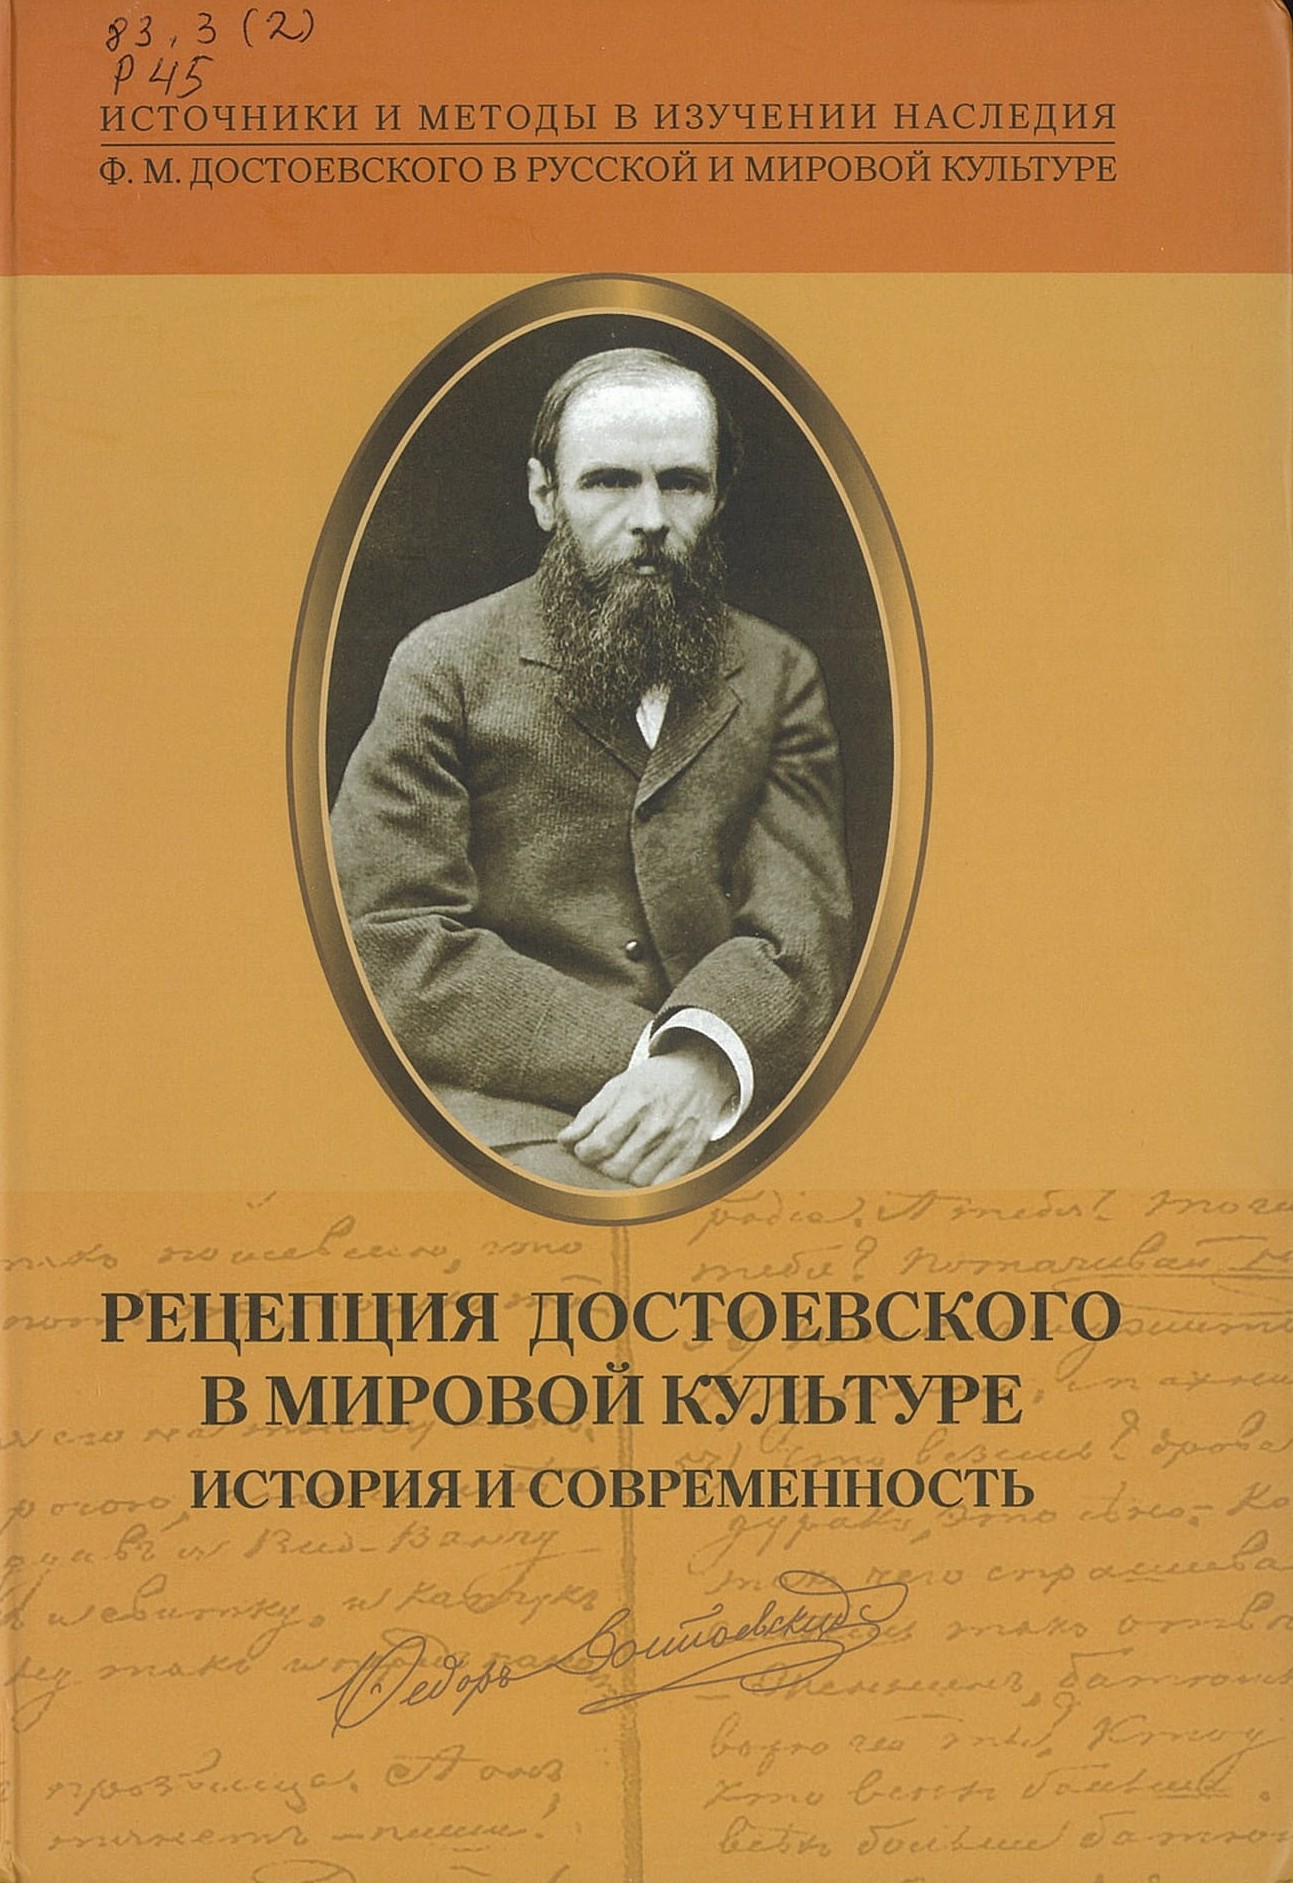 Рецепция Достоевского в мировой культуре: история и современность